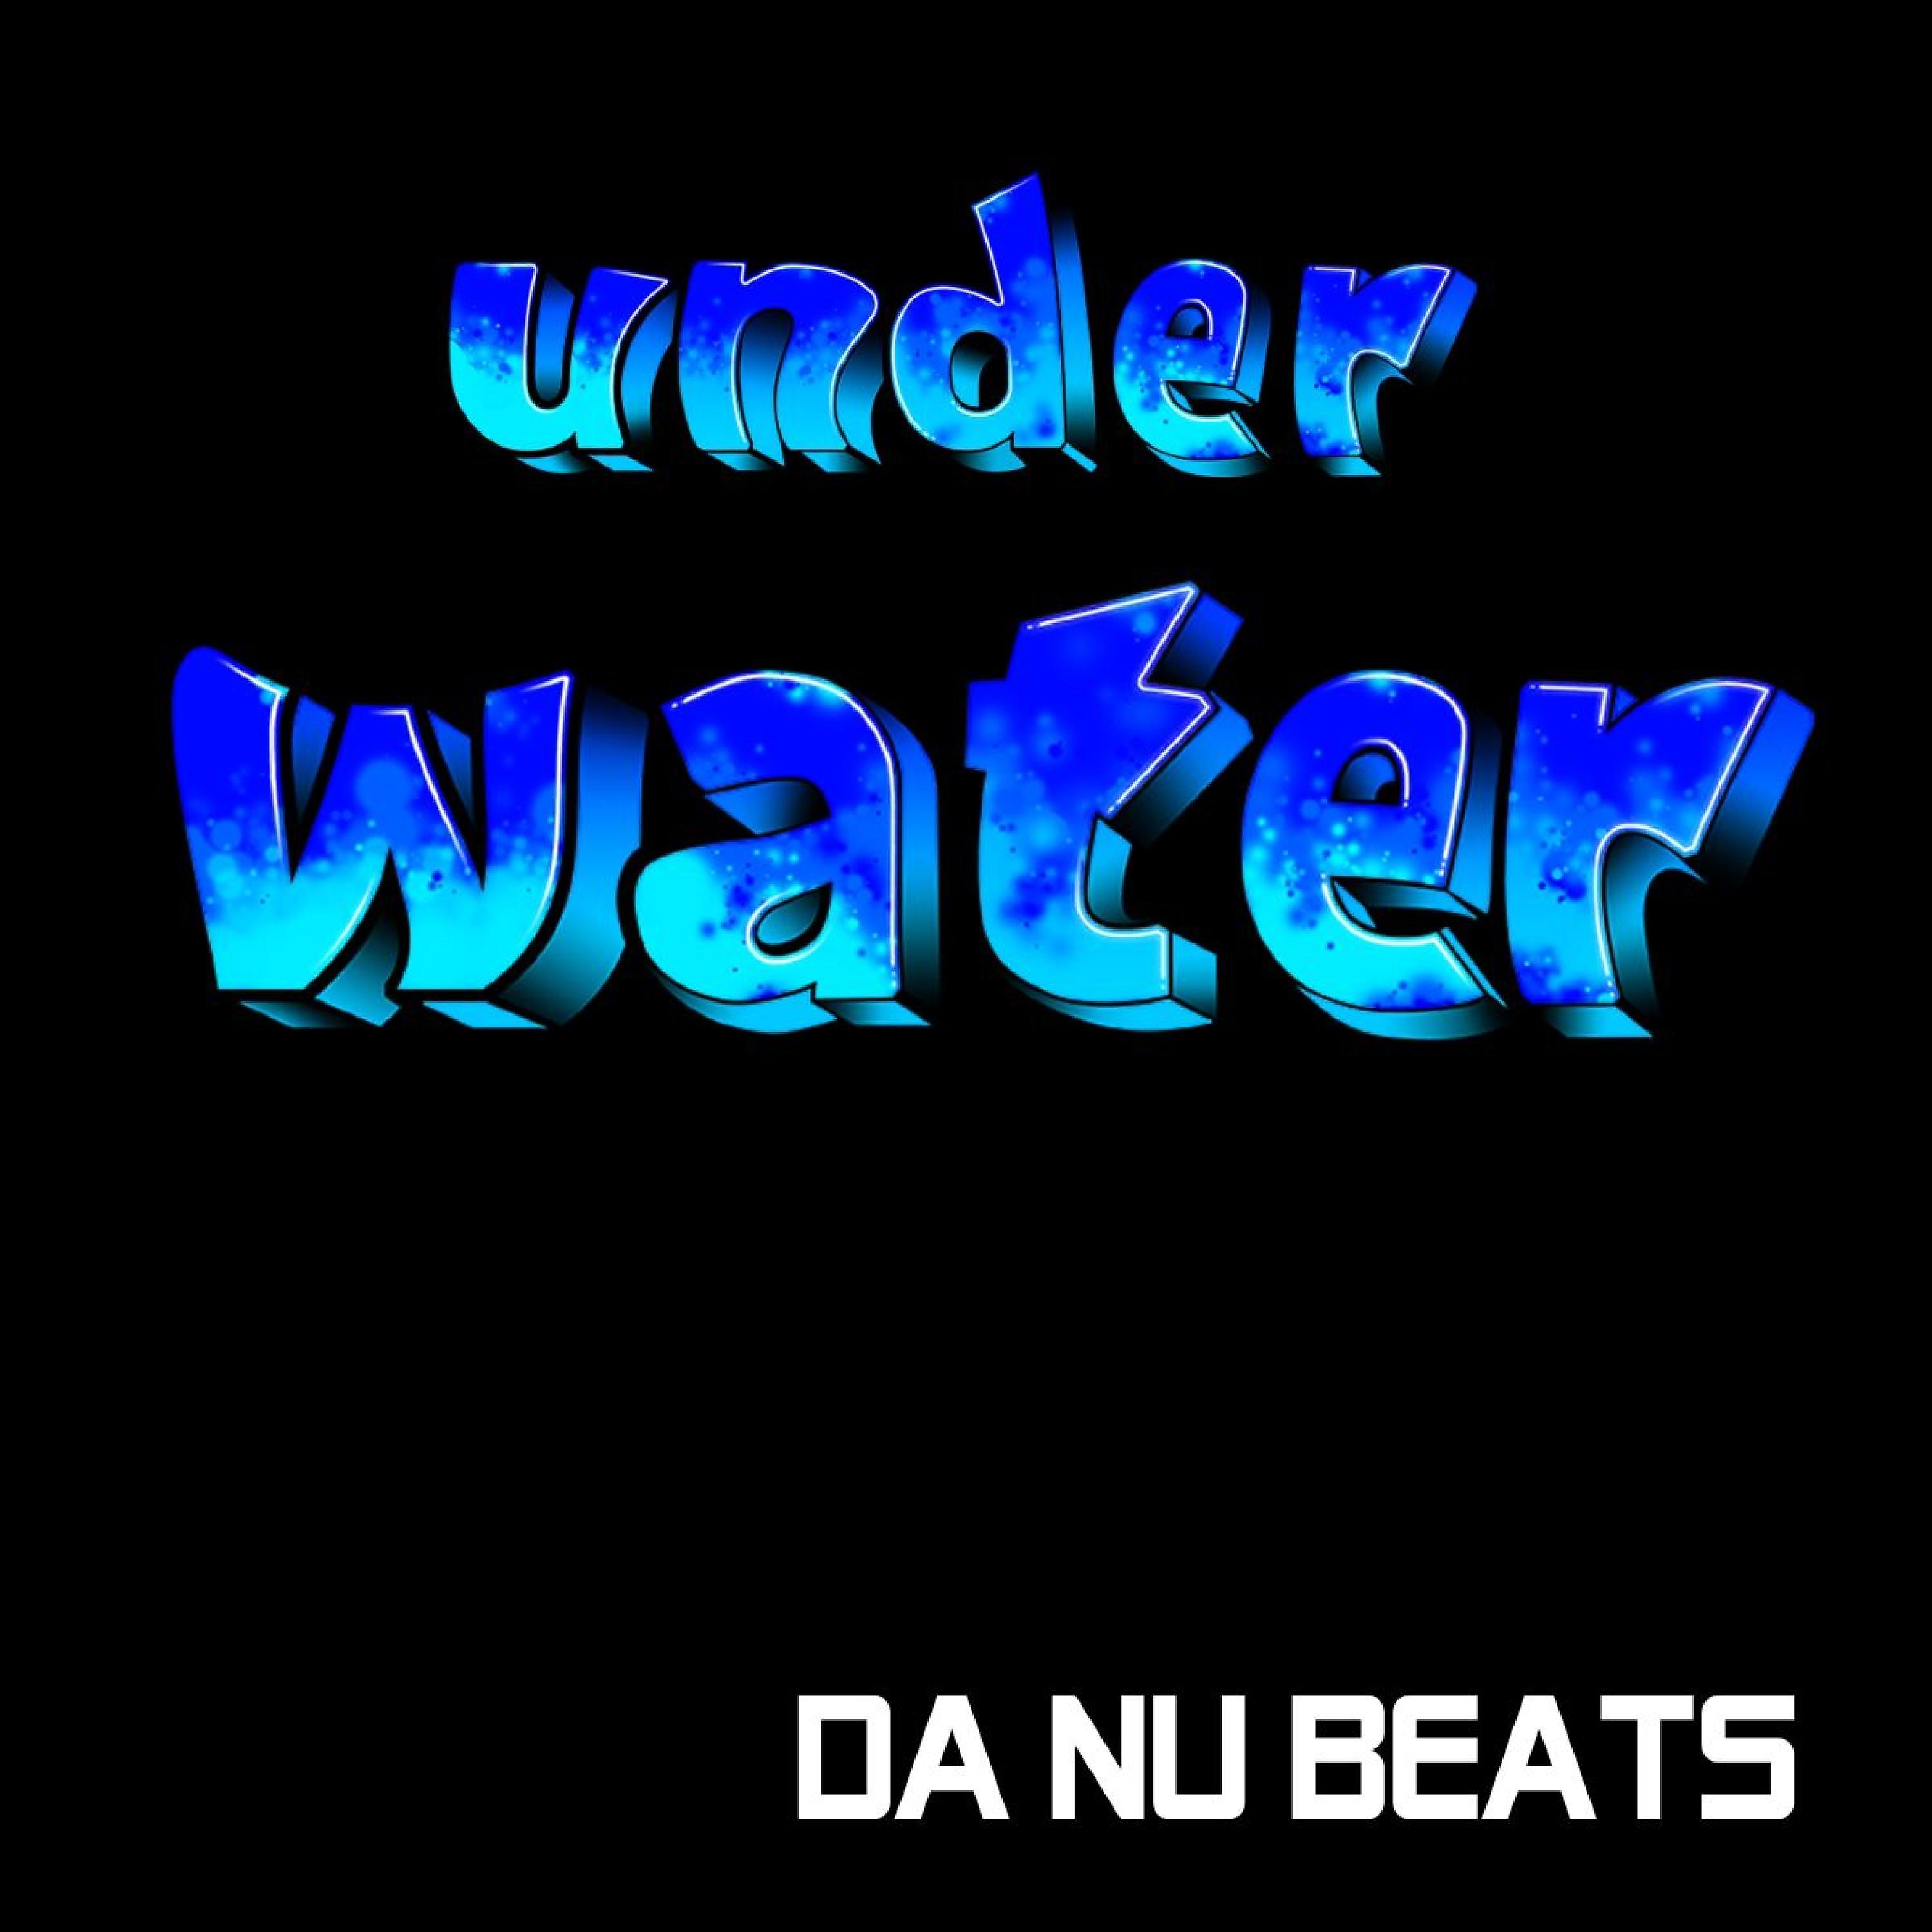 Постер альбома Under Water